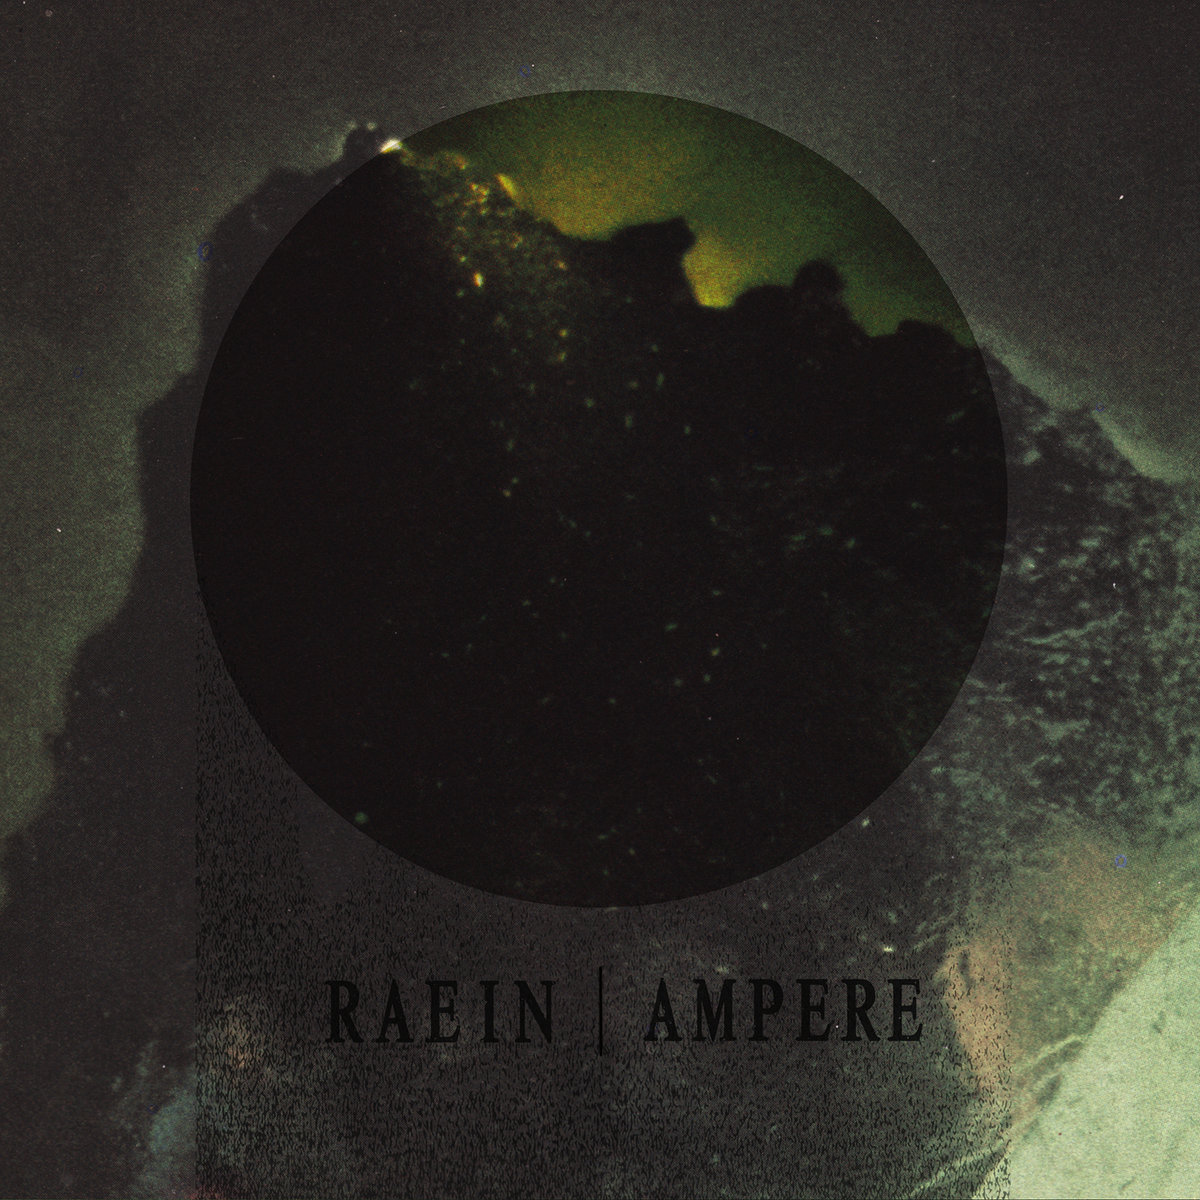 Split / Ampere + Raein